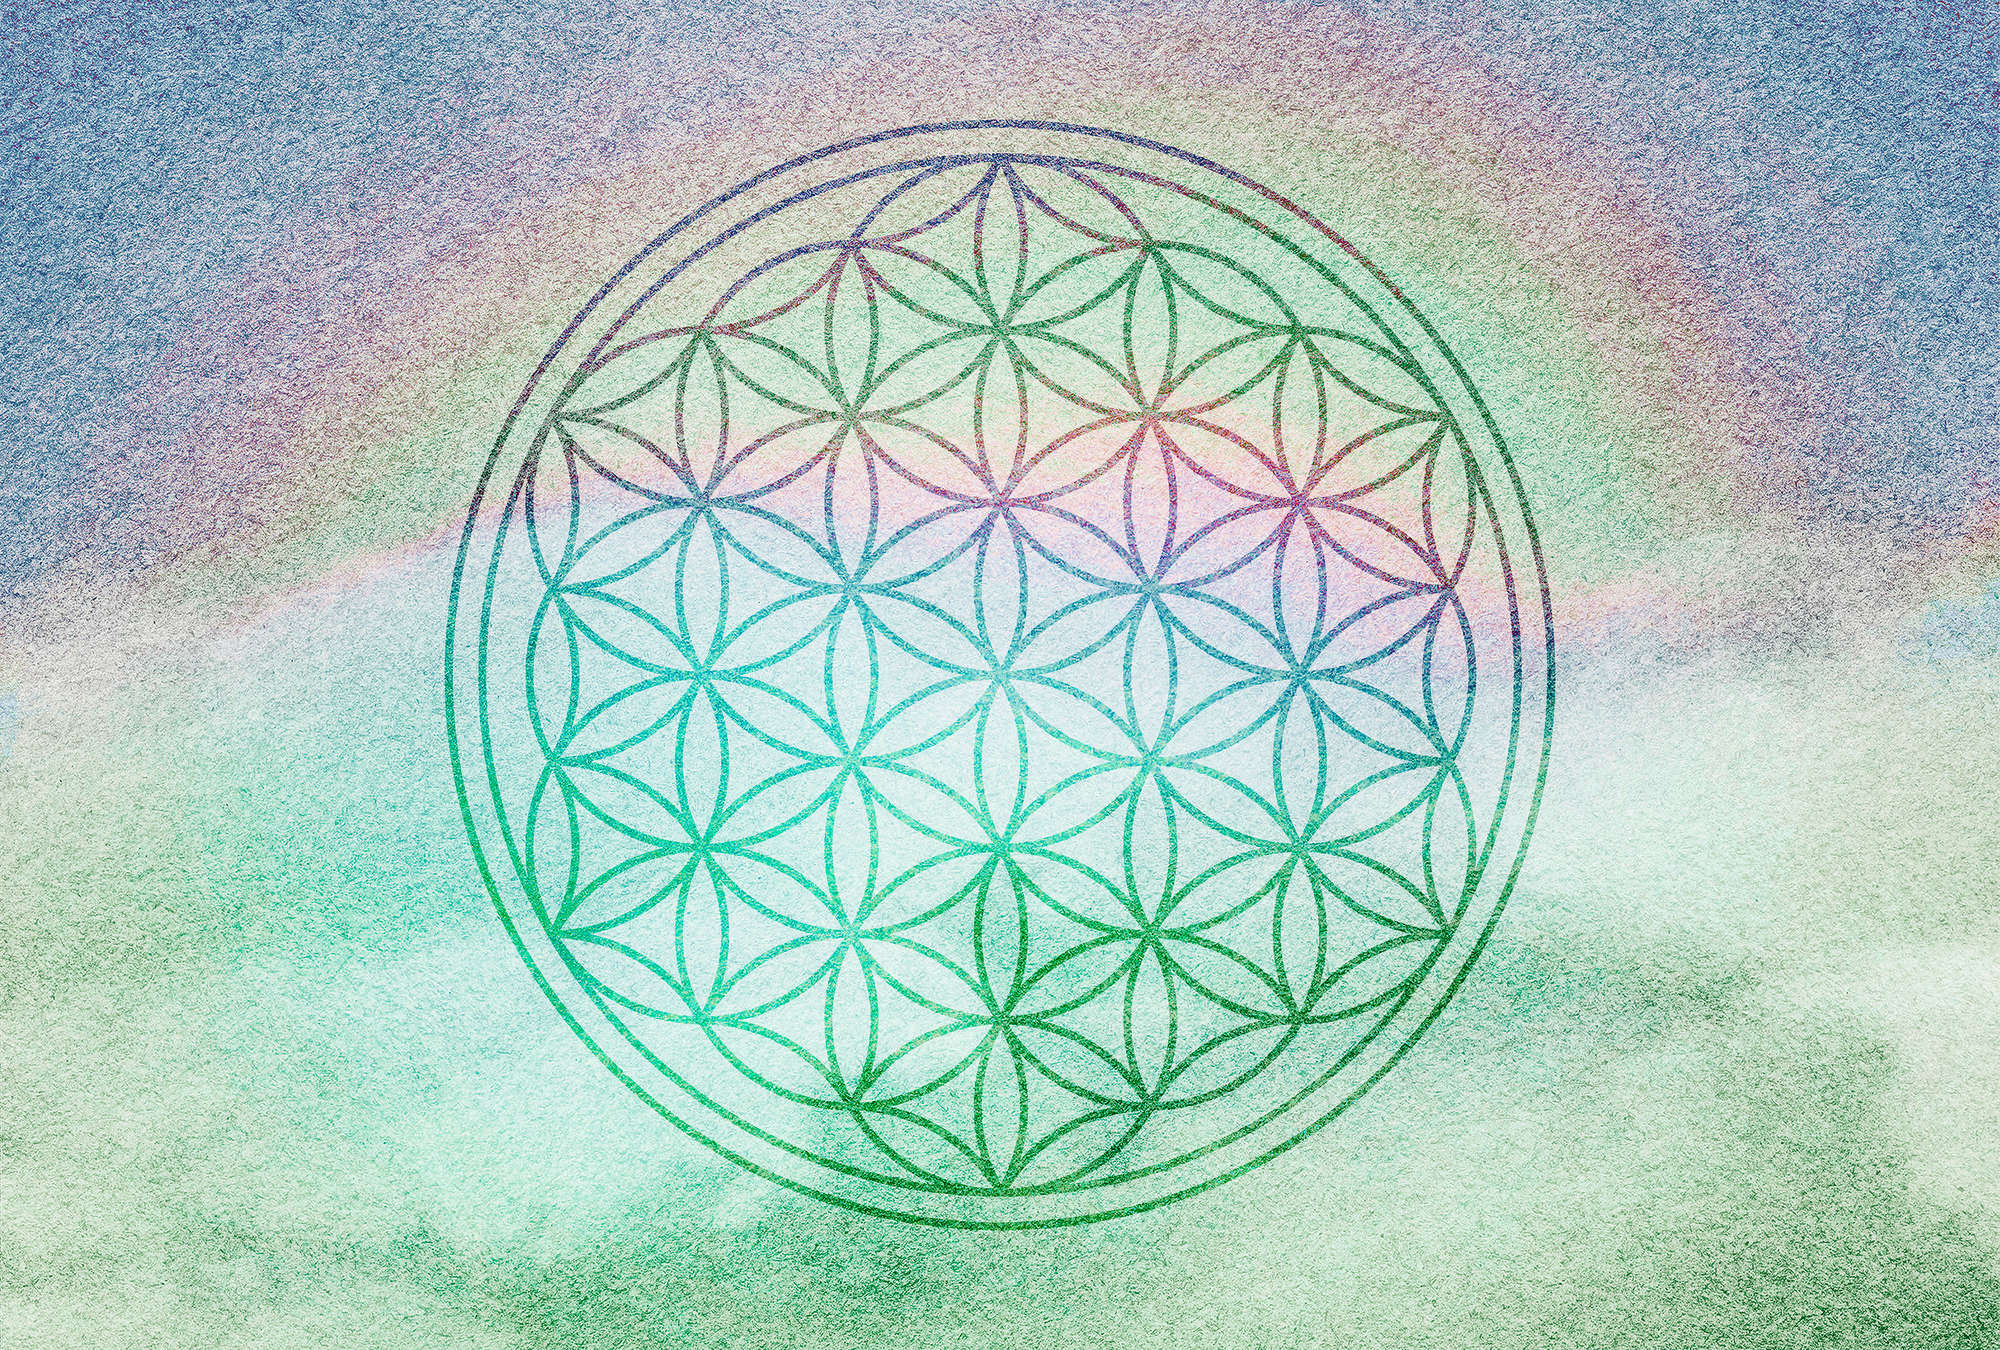             Papier peint Mandala aux couleurs de l'arc-en-ciel - vert, violet, rose
        